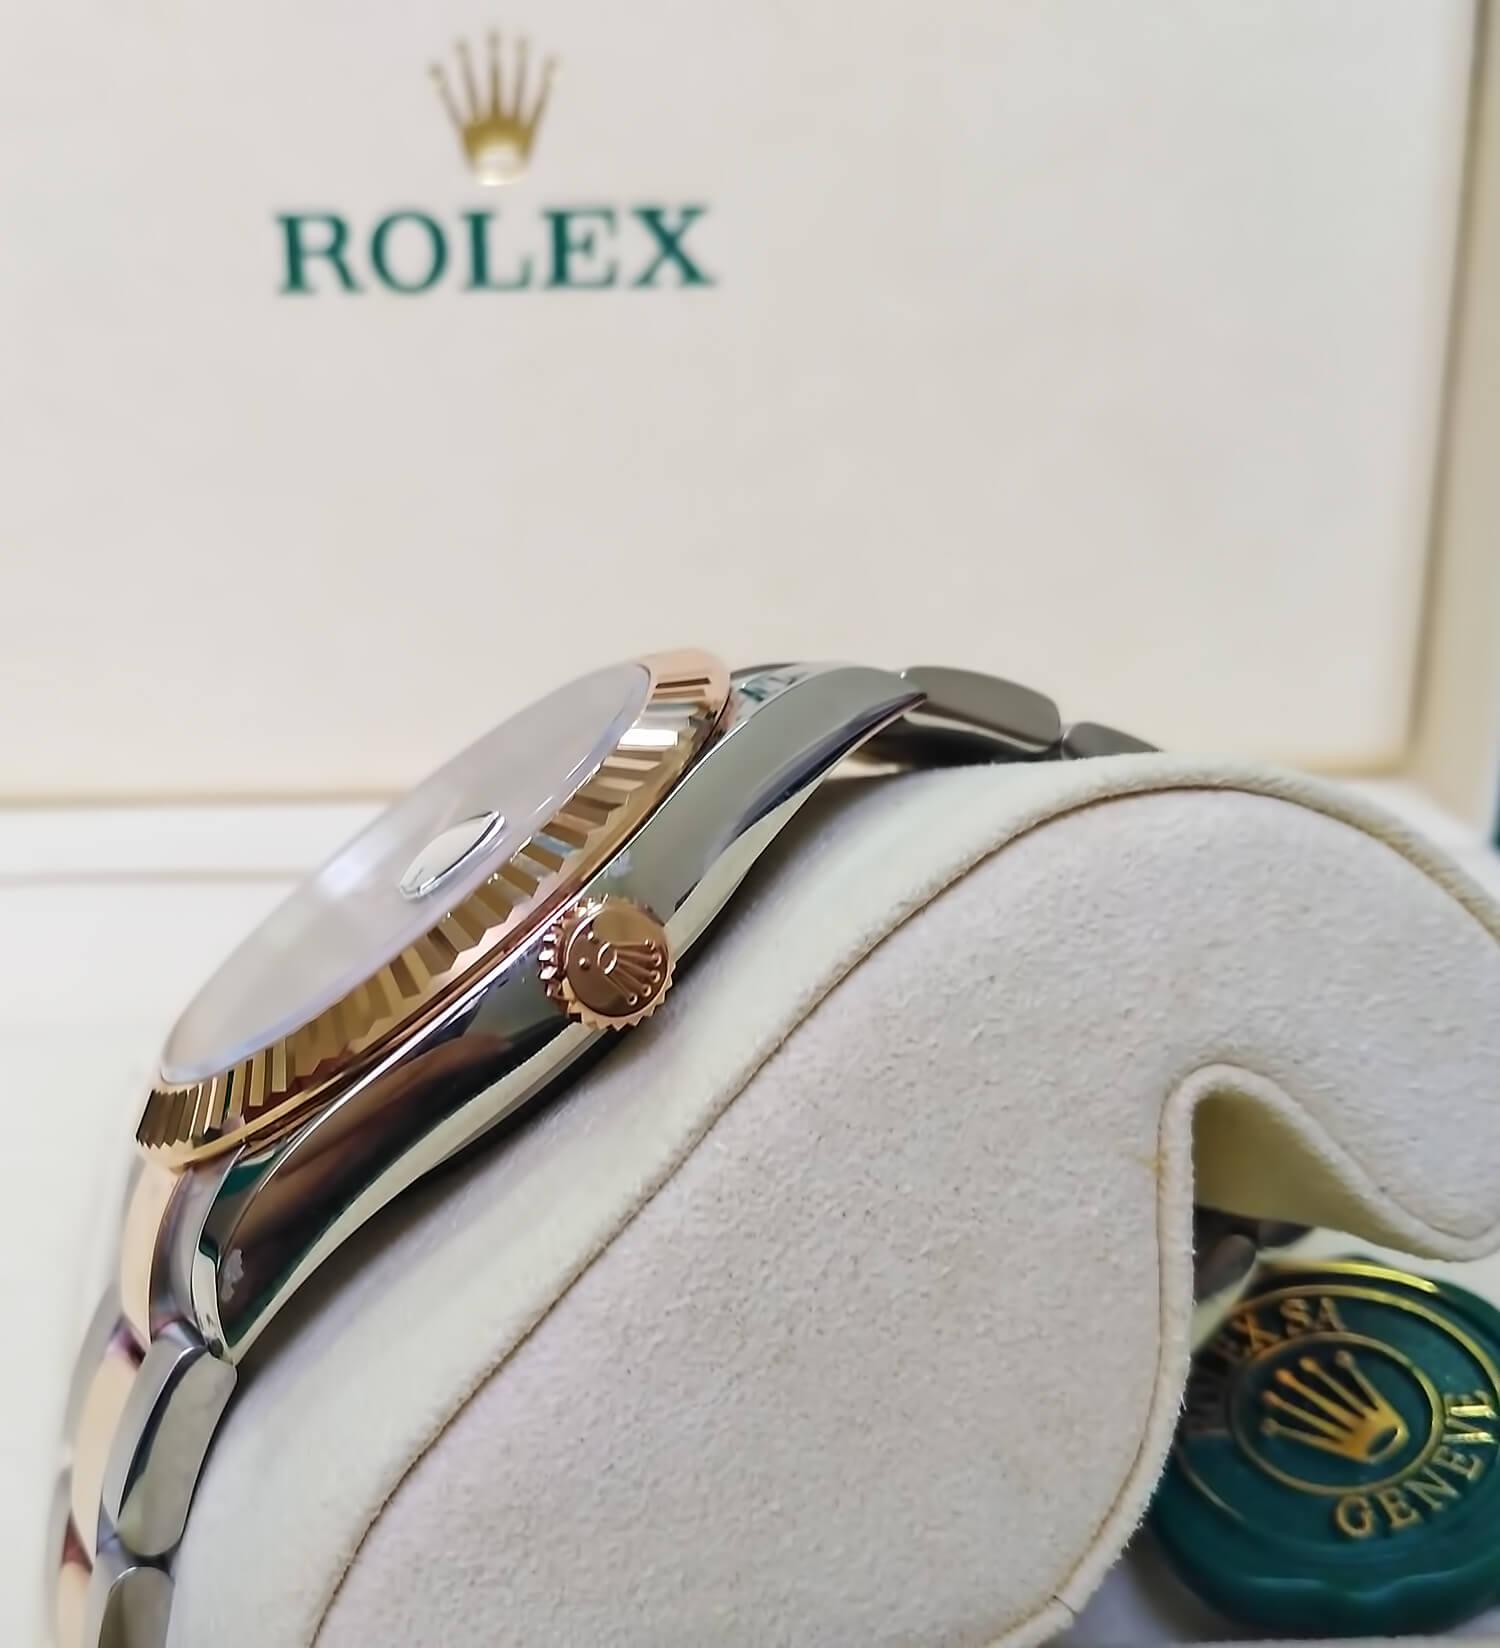 На заводной коронке реплики Ролекс "красуется" корона - логотип Rolex